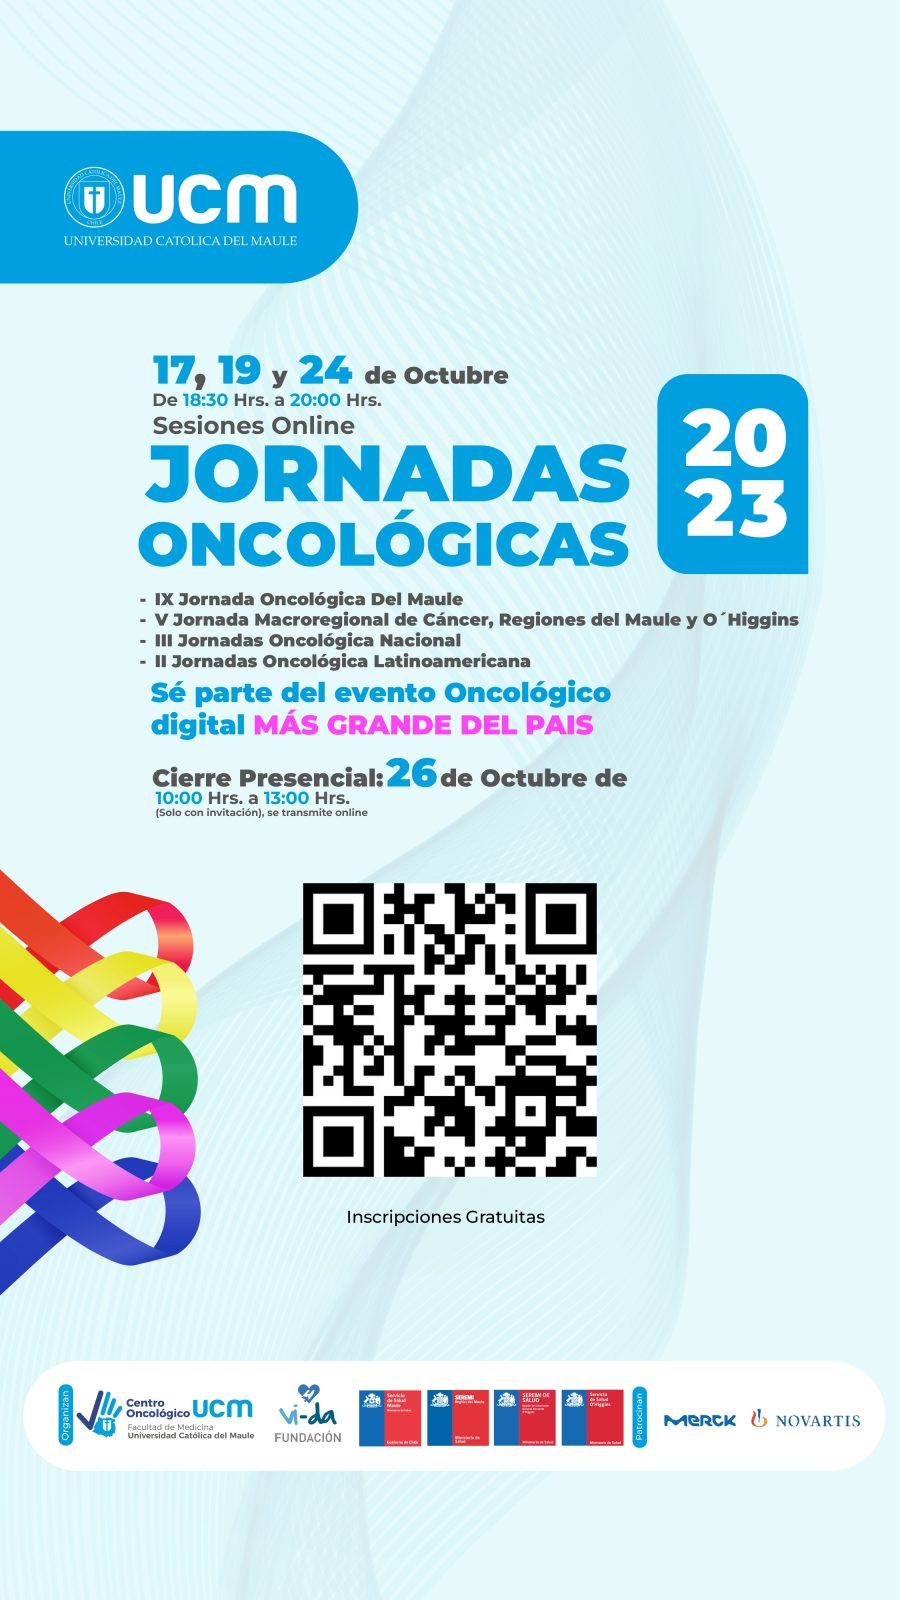 Expertos de Chile y el continente participarán en el evento oncológico más grande del país